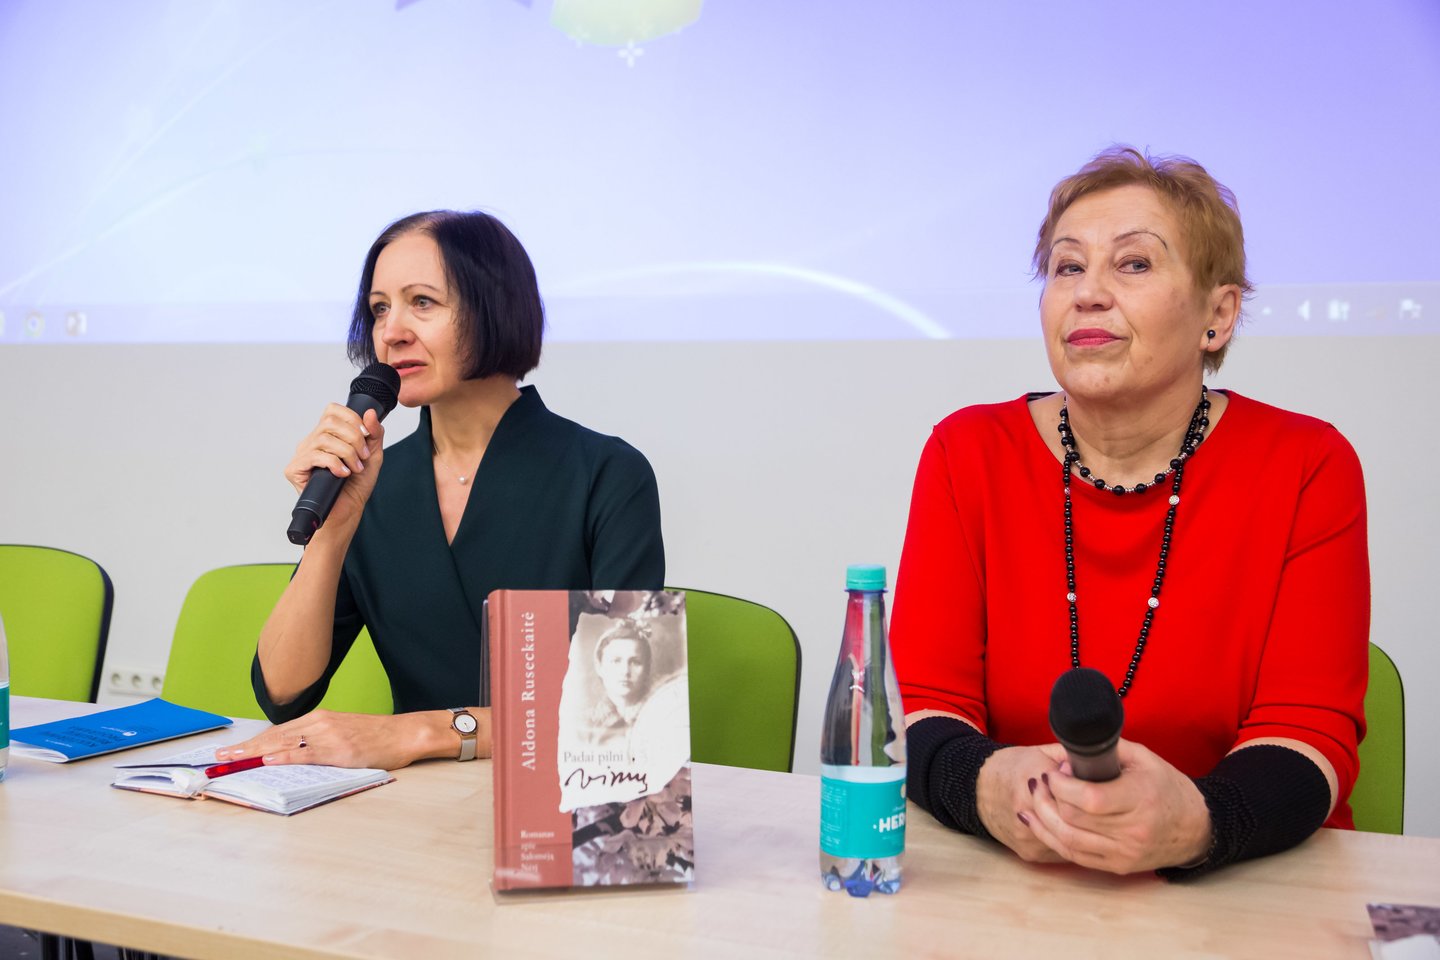 Šiemet Vilniaus knygų mugėje A.Ruseckaitė pristatė savo knygą apie S.Nėrį "Padai pilni vinių".<br> M.Ambrazo nuotr.